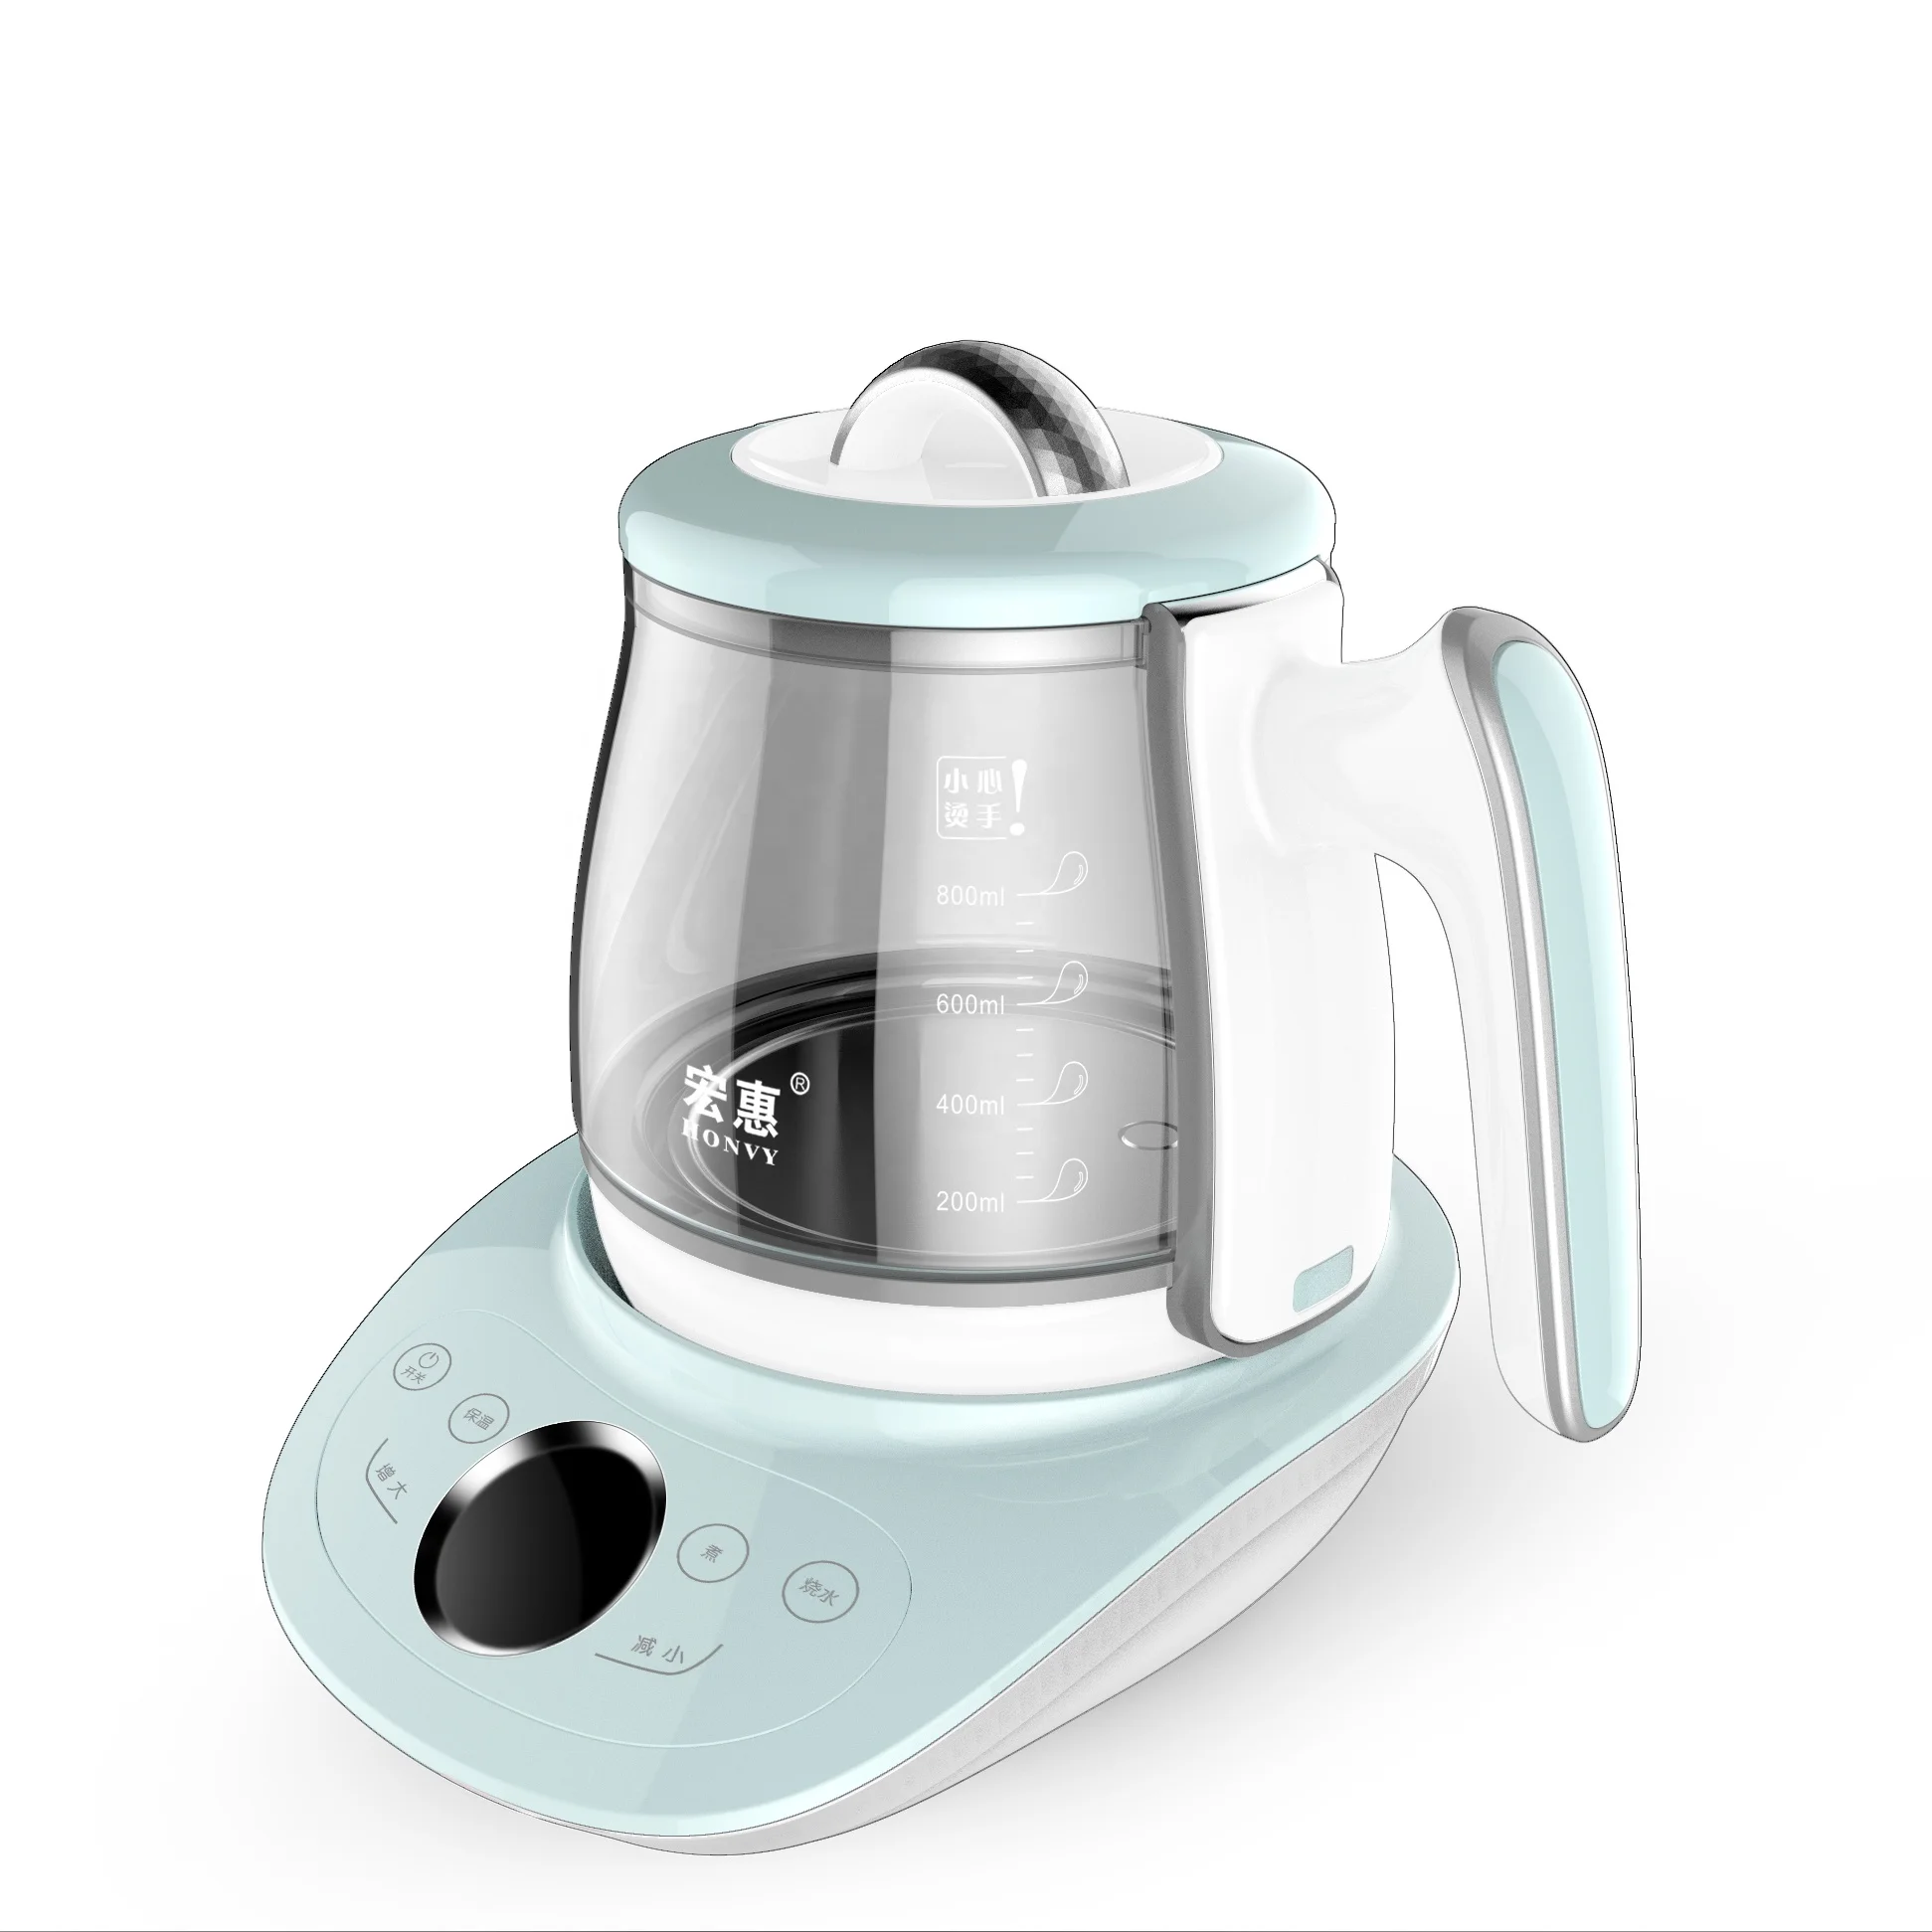 12-Cup Smart Temp Digital Tea Kettle Samovar Household Appliances